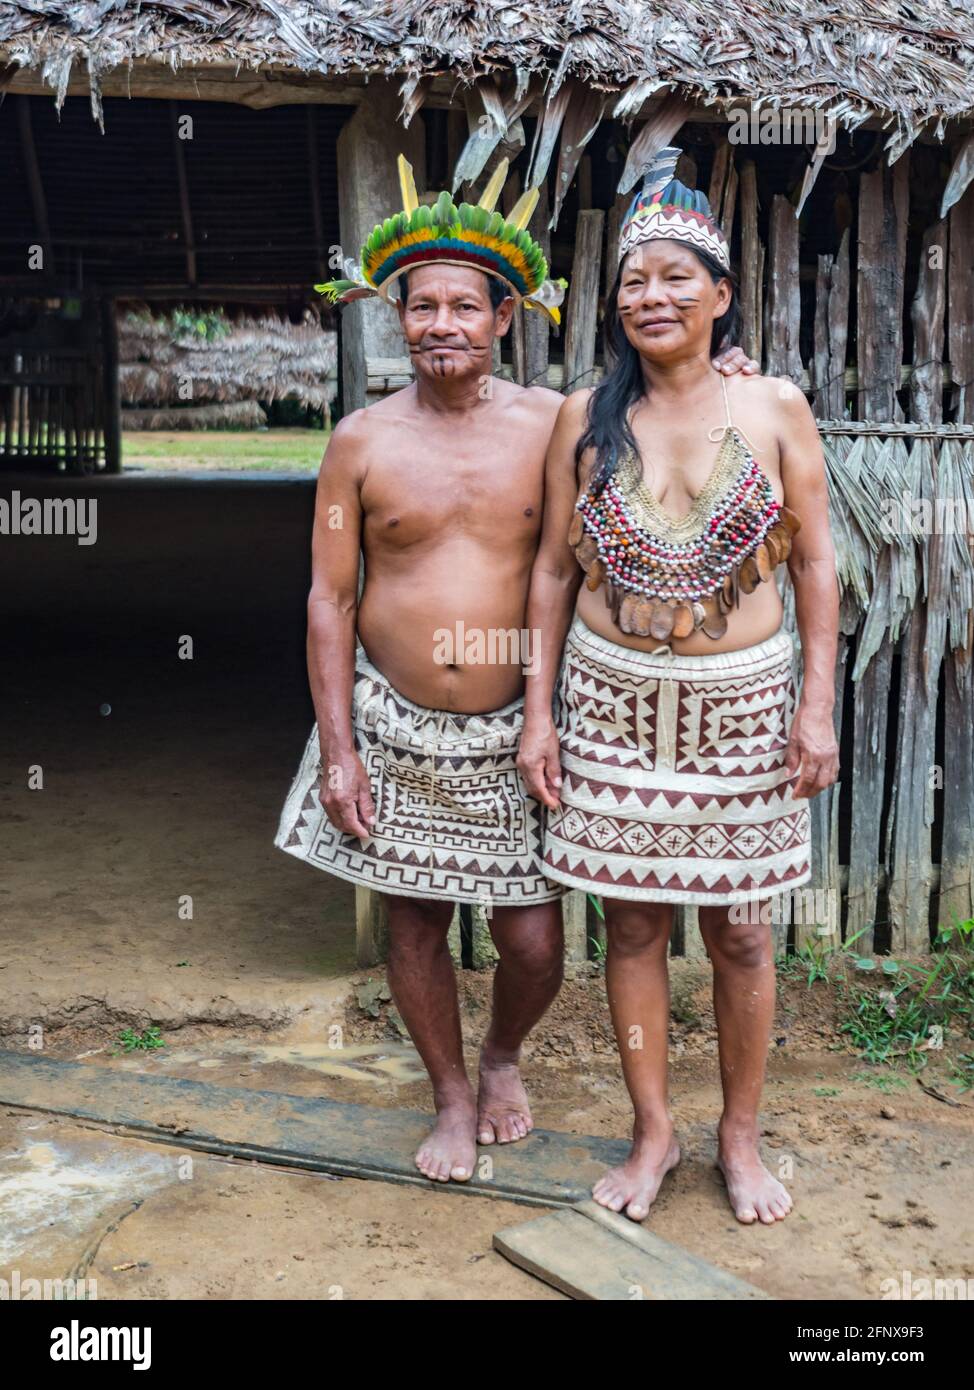 Tribu india amazona fotografías e imágenes de alta resolución - Alamy